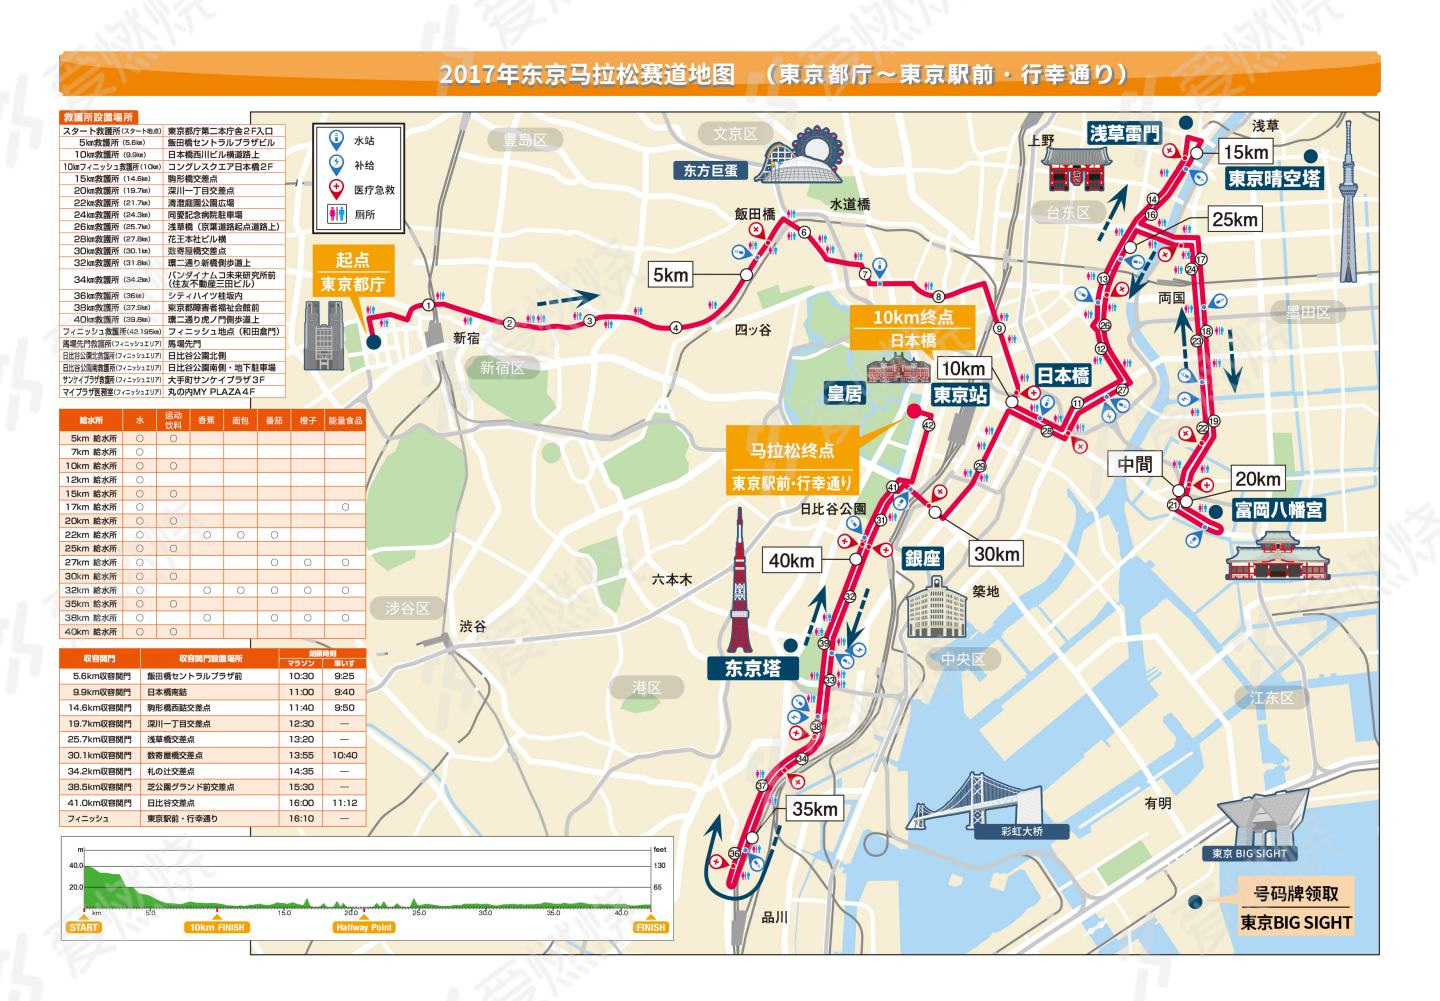 燃烧指南·东京马拉松:最详实的东马中文攻略,献给跑全球最佳服务赛事